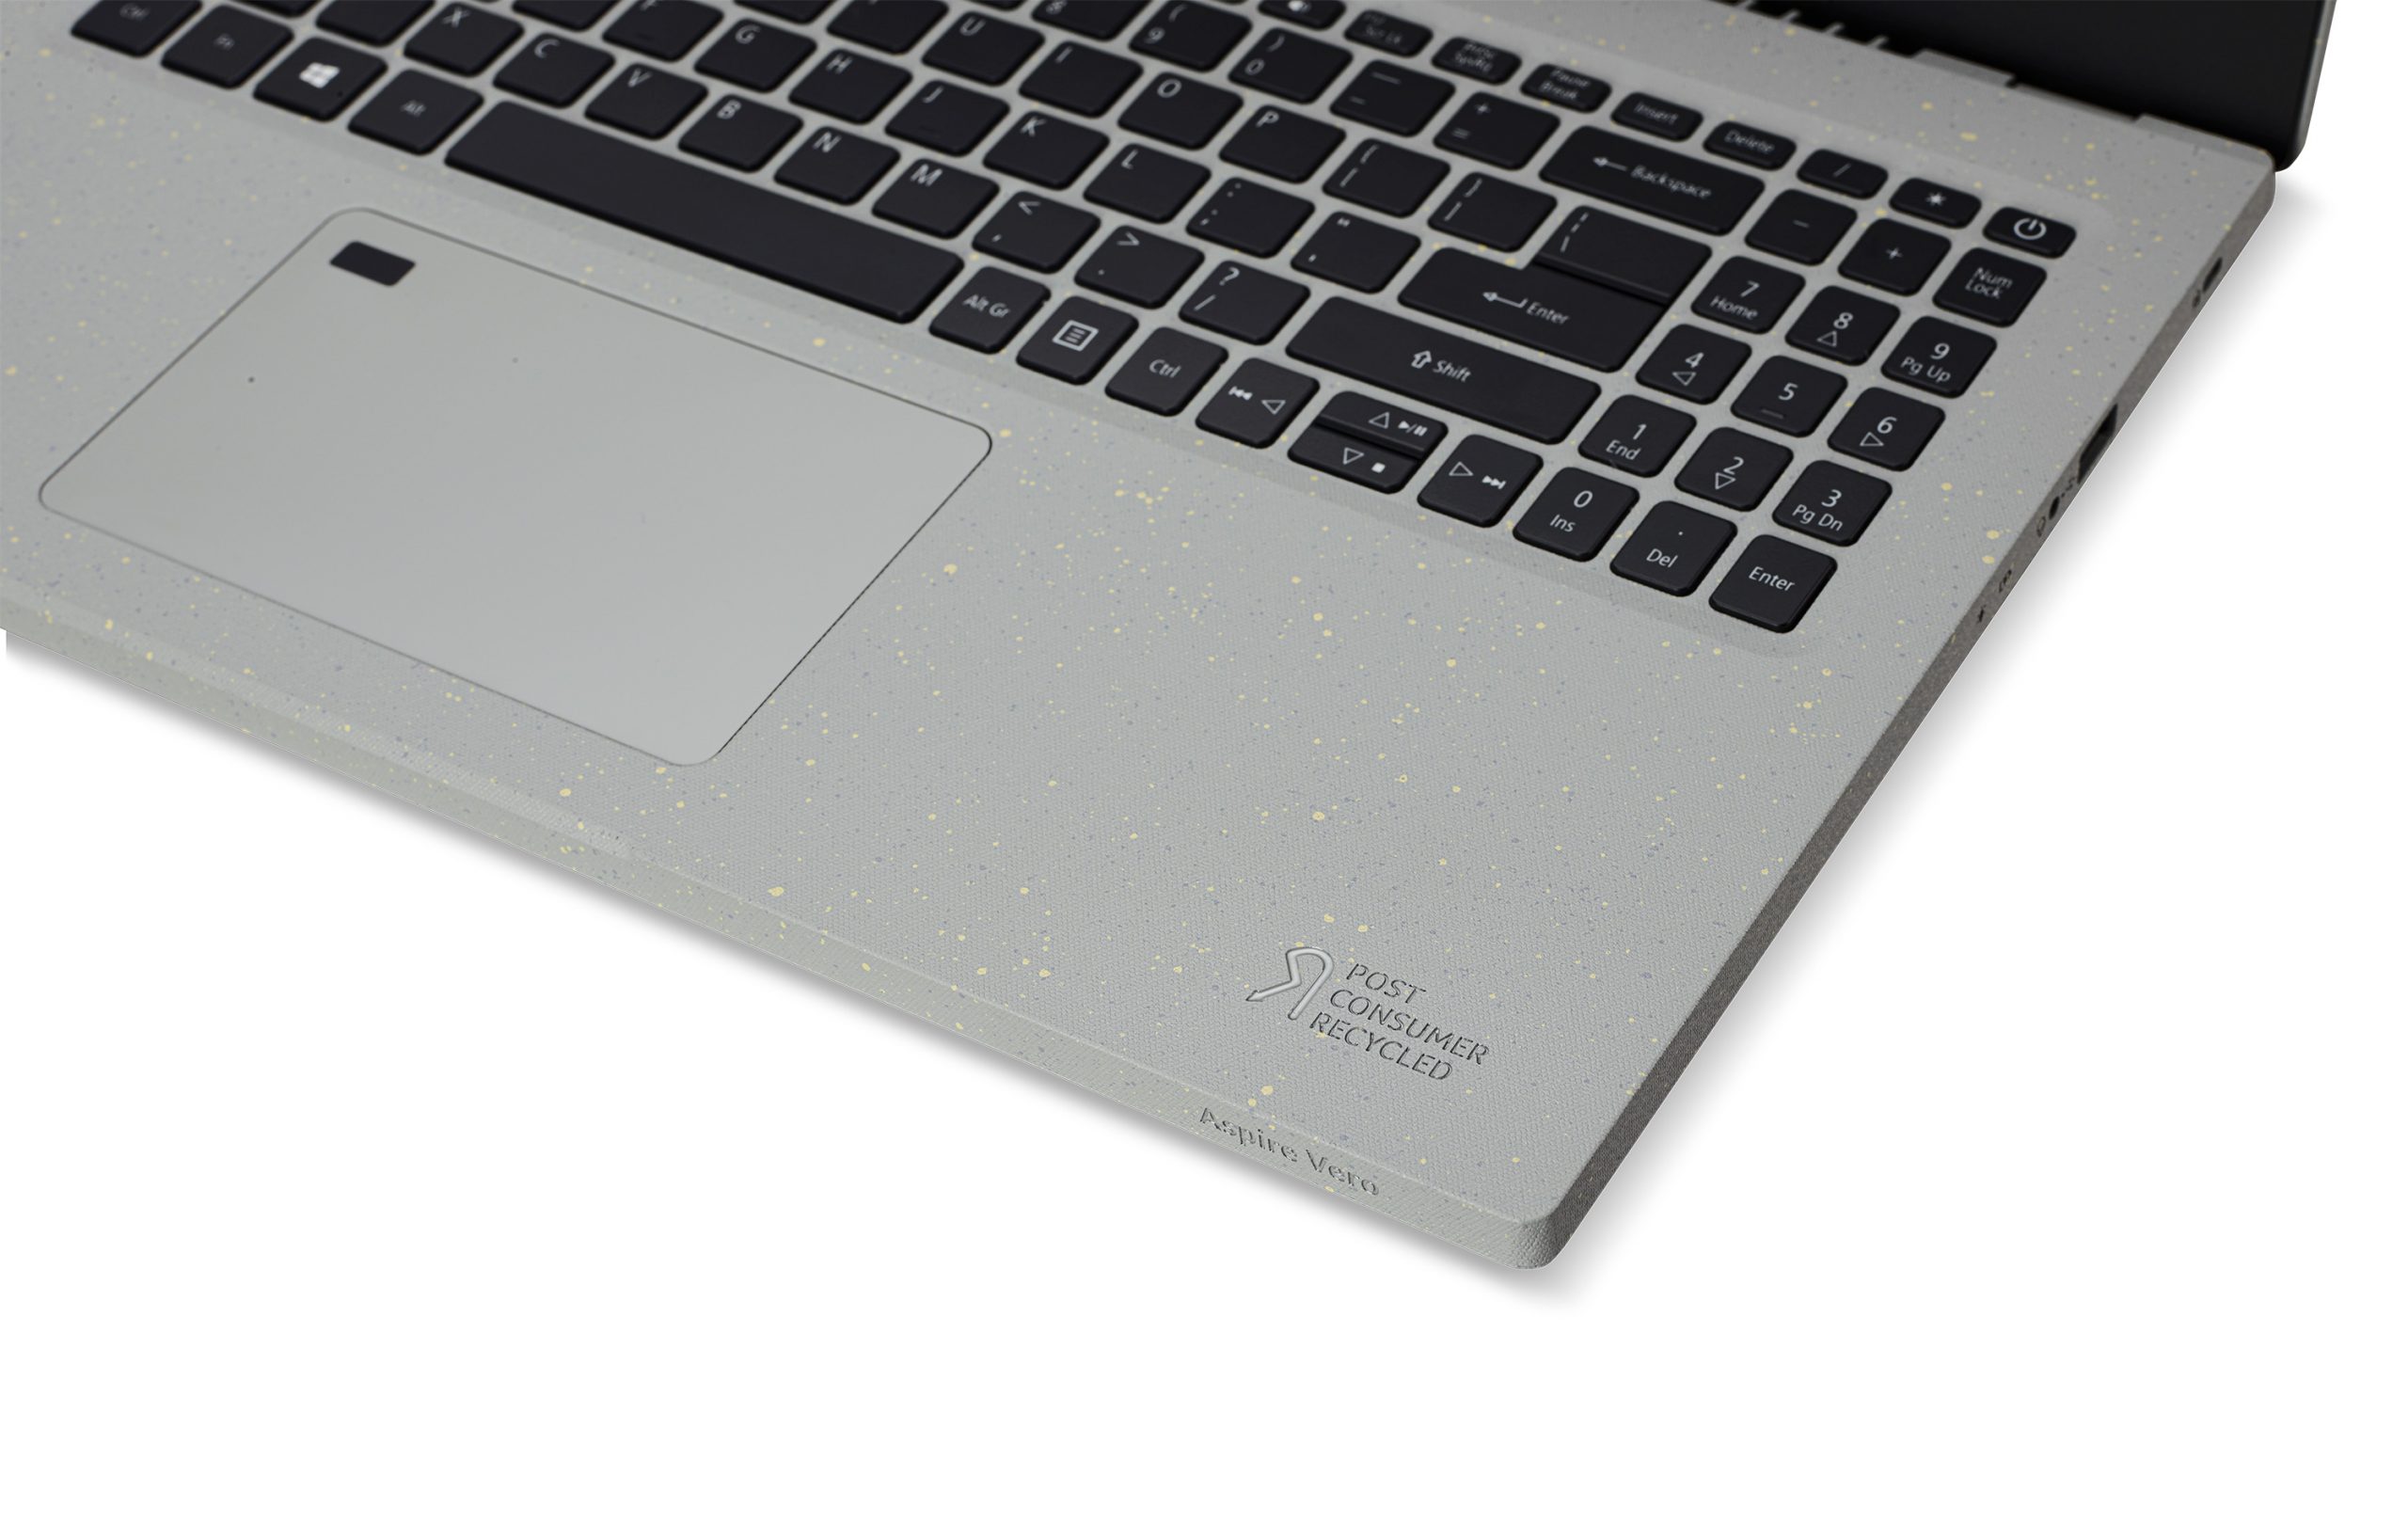 Acer lança no Brasil notebook Aspire Vero com SSD gigante e feito